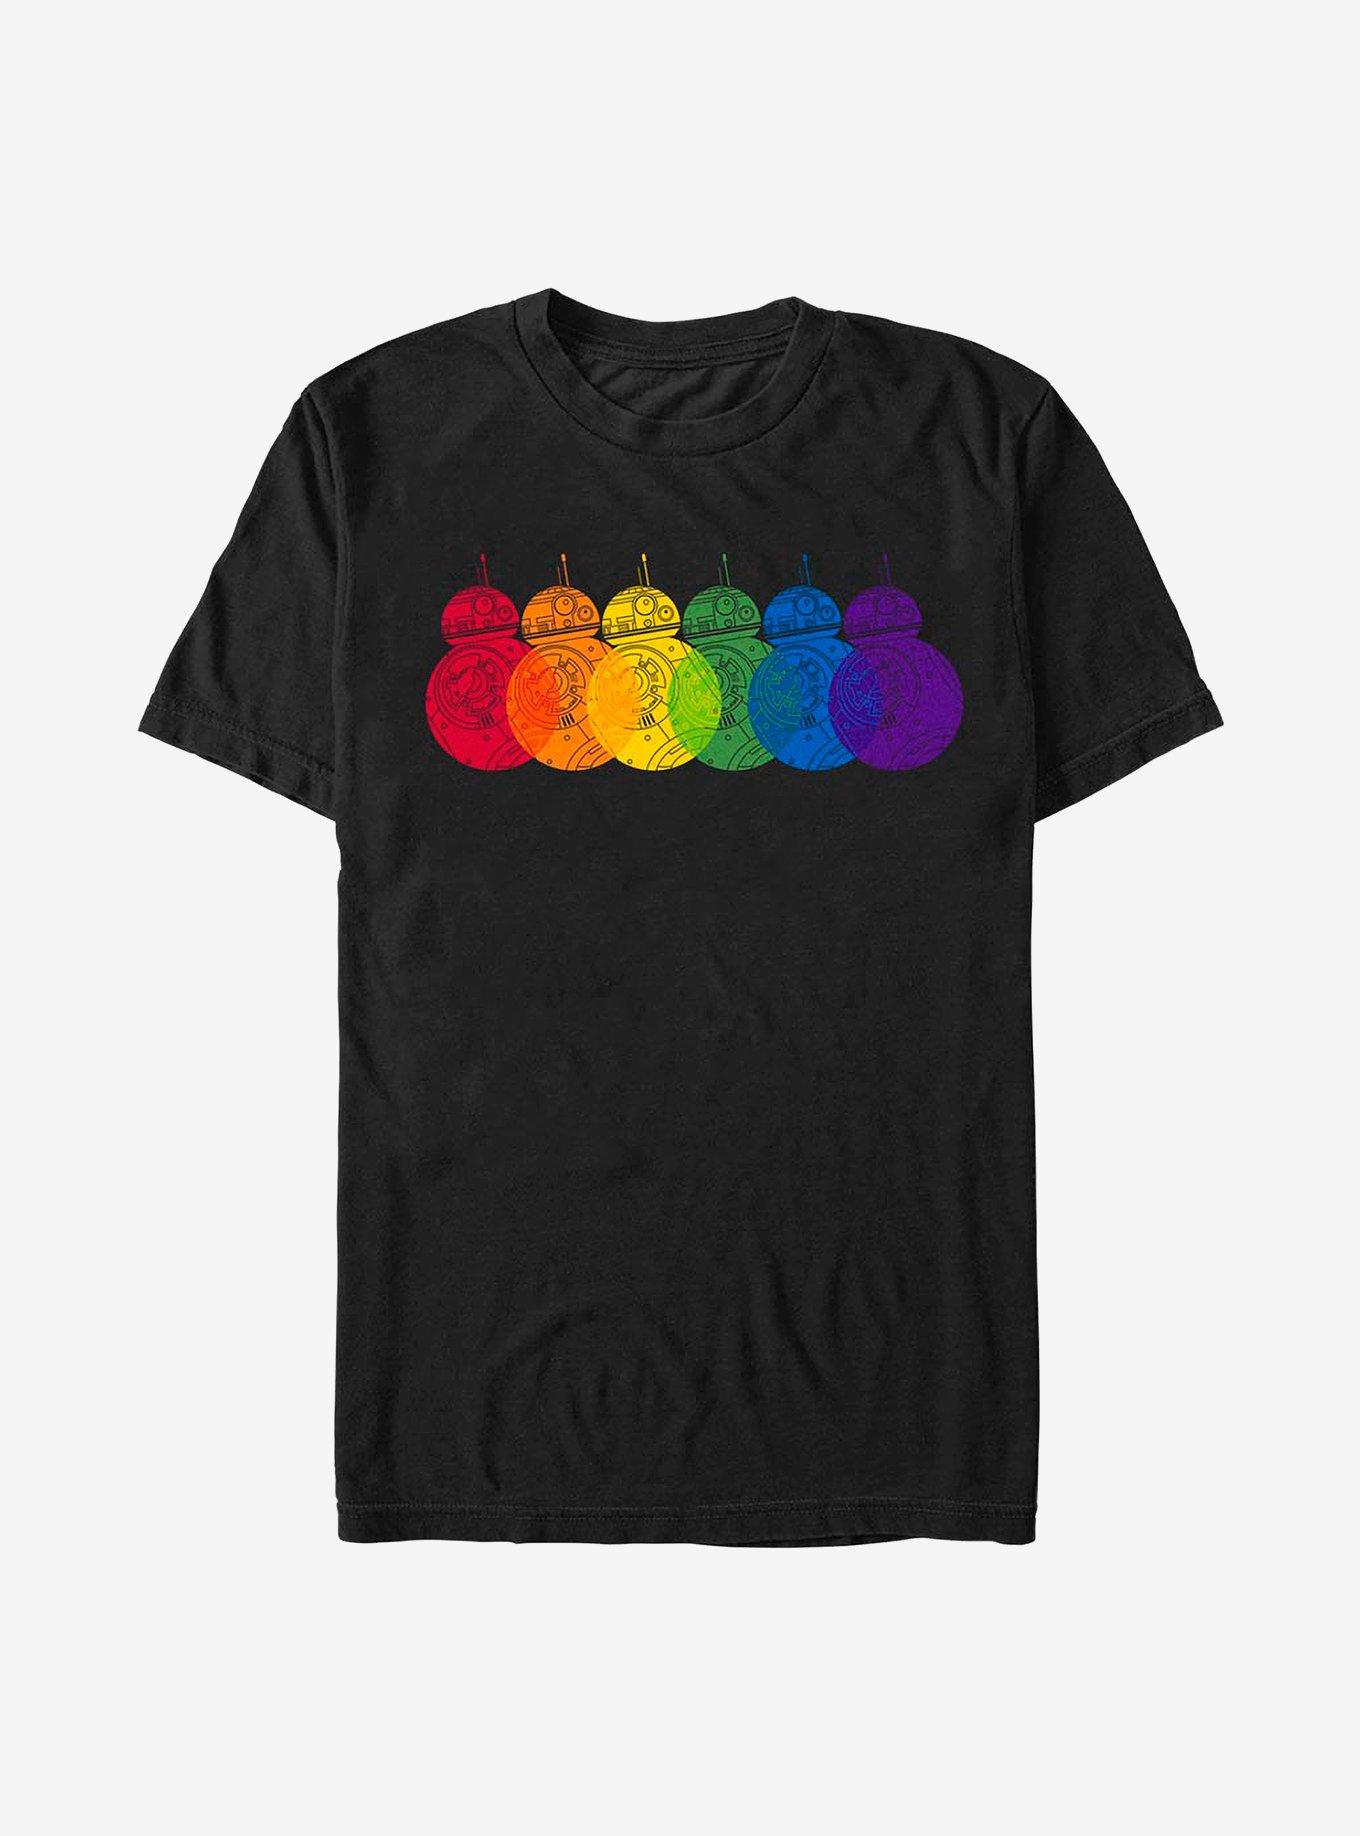 Star Wars: The Last Jedi BB-8 Rainbows Logo T-Shirt